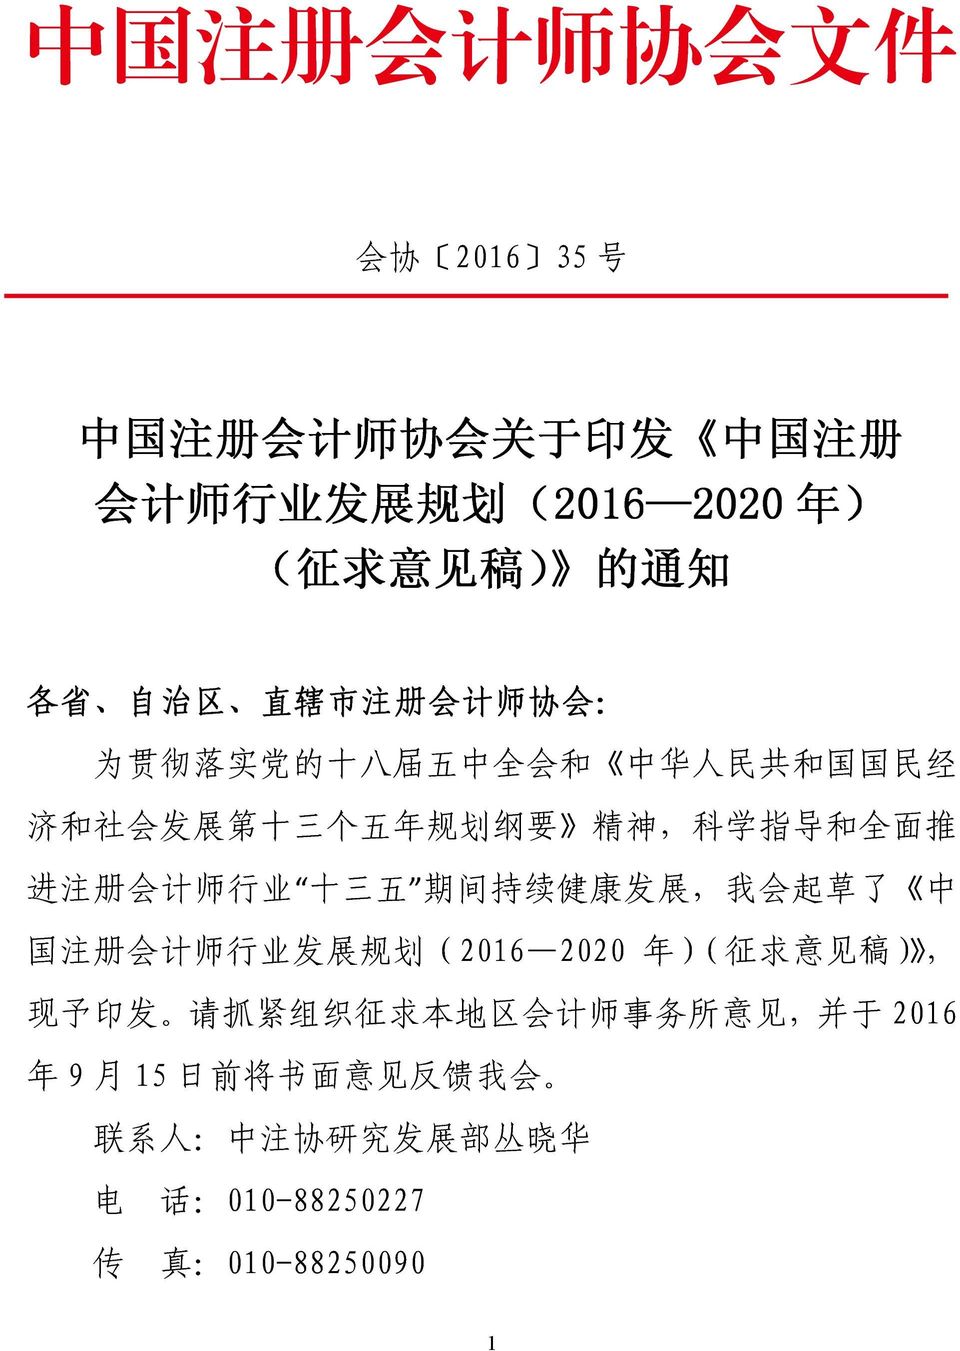 进 注 册 会 计 师 行 业 十 三 五 期 间 持 续 健 康 发 展, 我 会 起 草 了 中 国 注 册 会 计 师 行 业 发 展 规 划 (2016 2020 年 )( 征 求 意 见 稿 ), 现 予 印 发 请 抓 紧 组 织 征 求 本